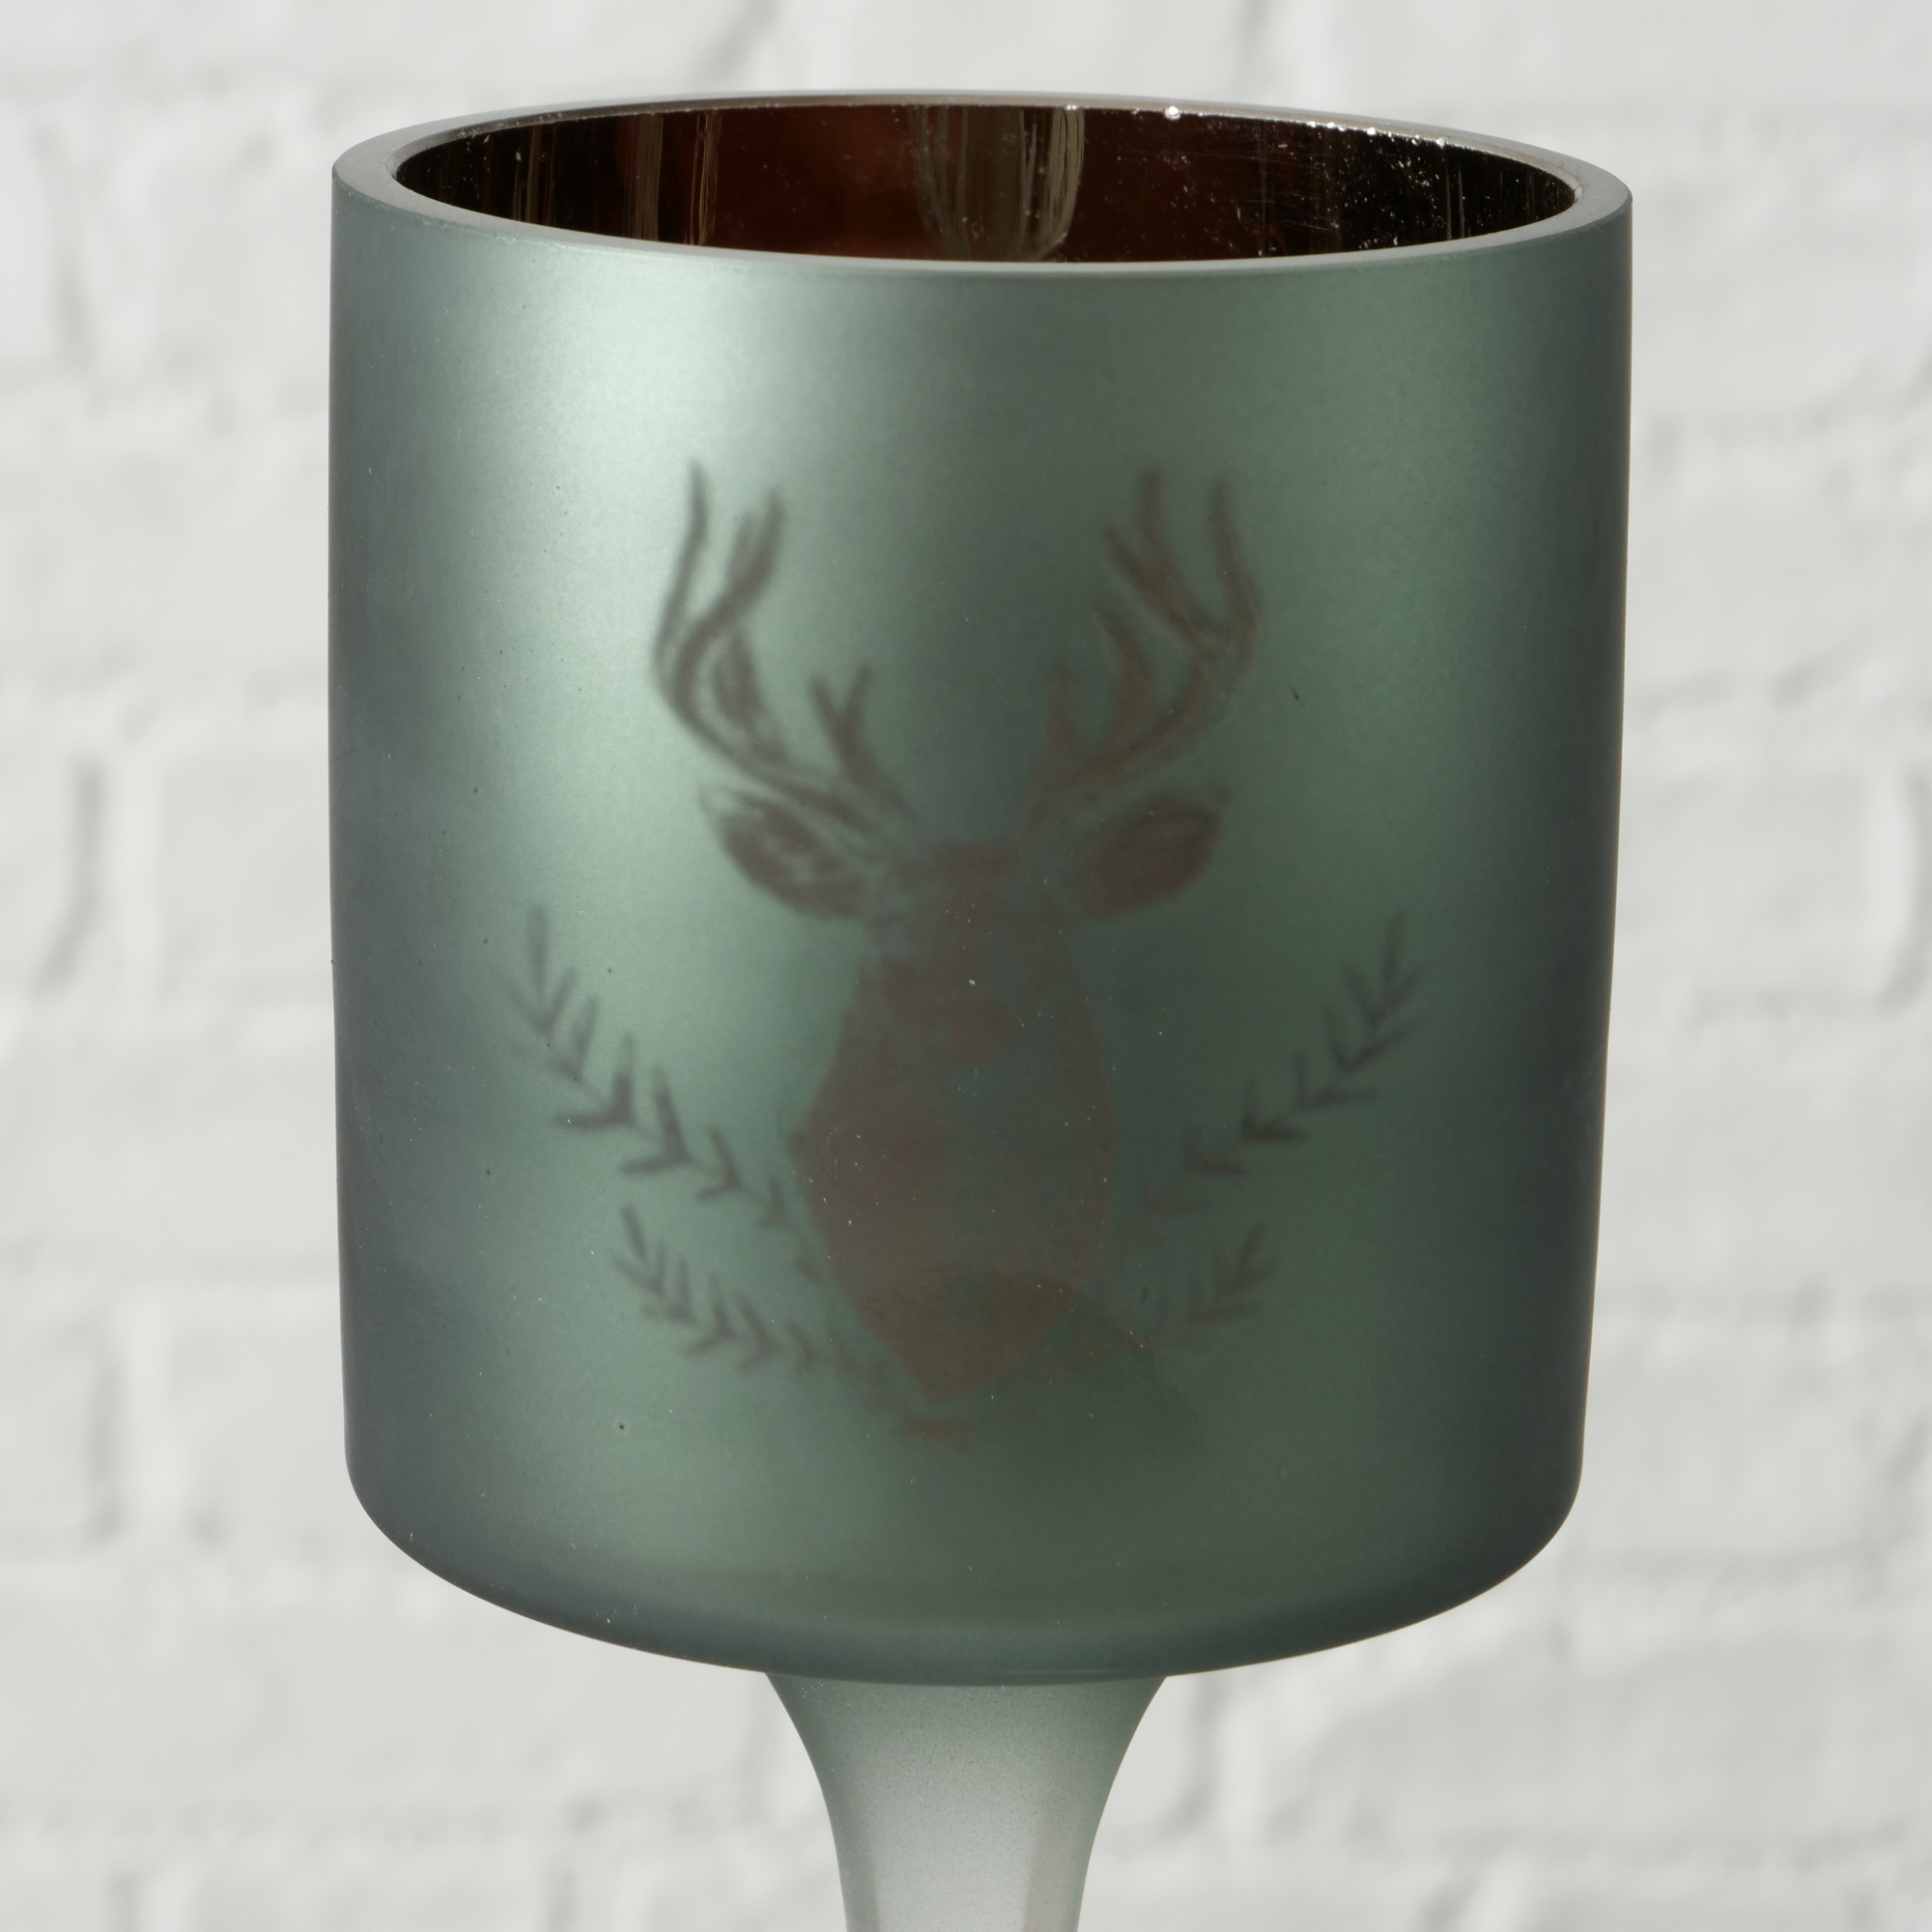 Windlicht 'Rudolf' Glas 25 cm, 2 Farben sortiert + product picture